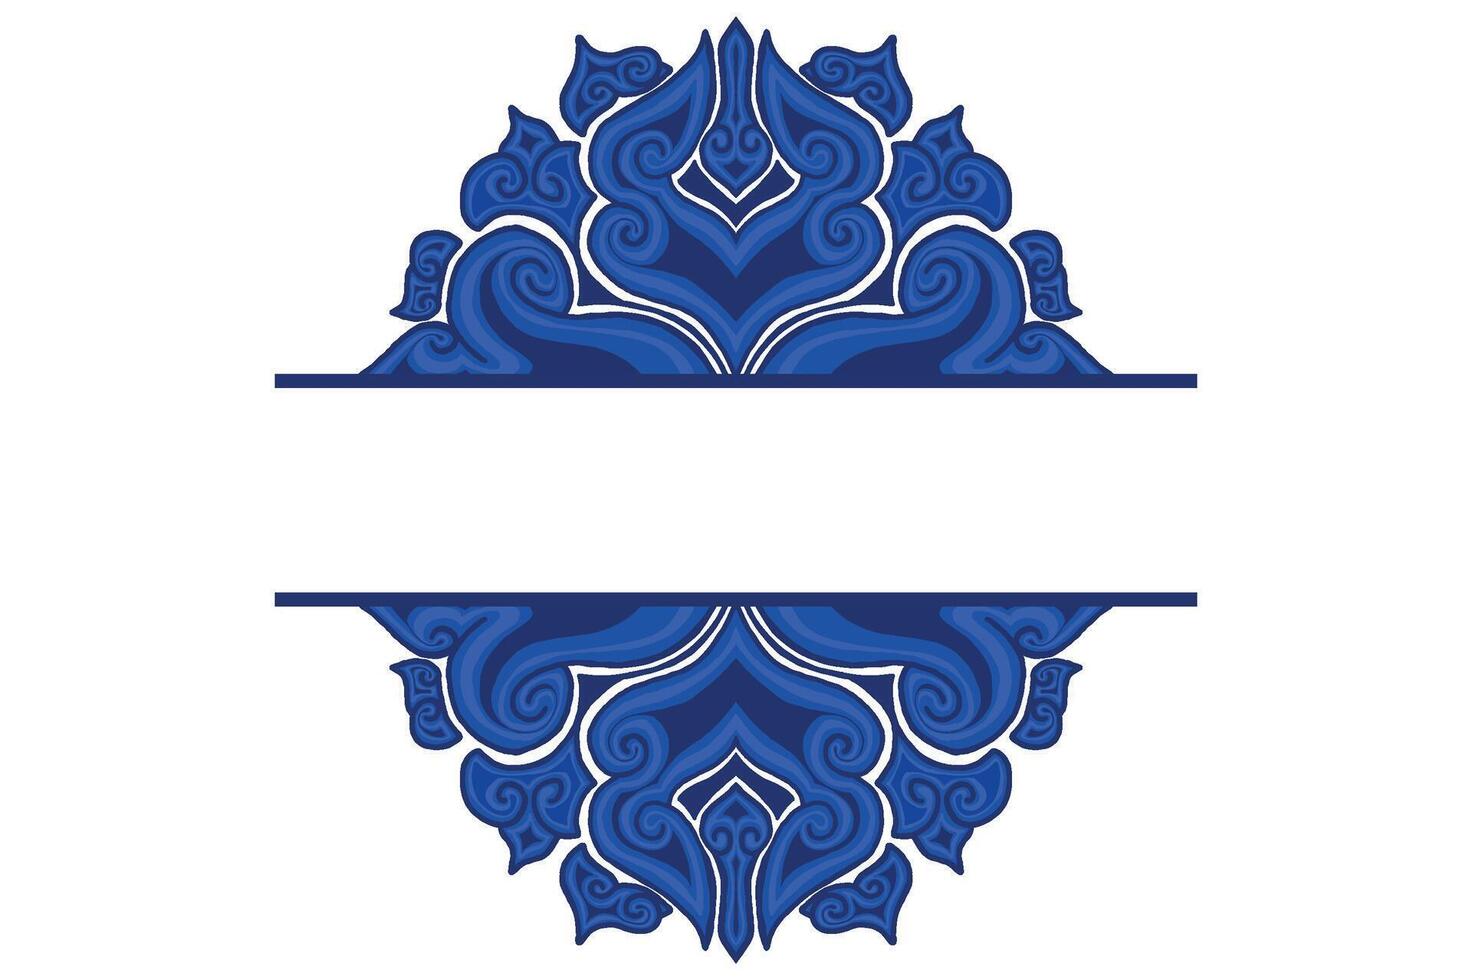 azul ornamento marco frontera vector diseño para decorativo elemento